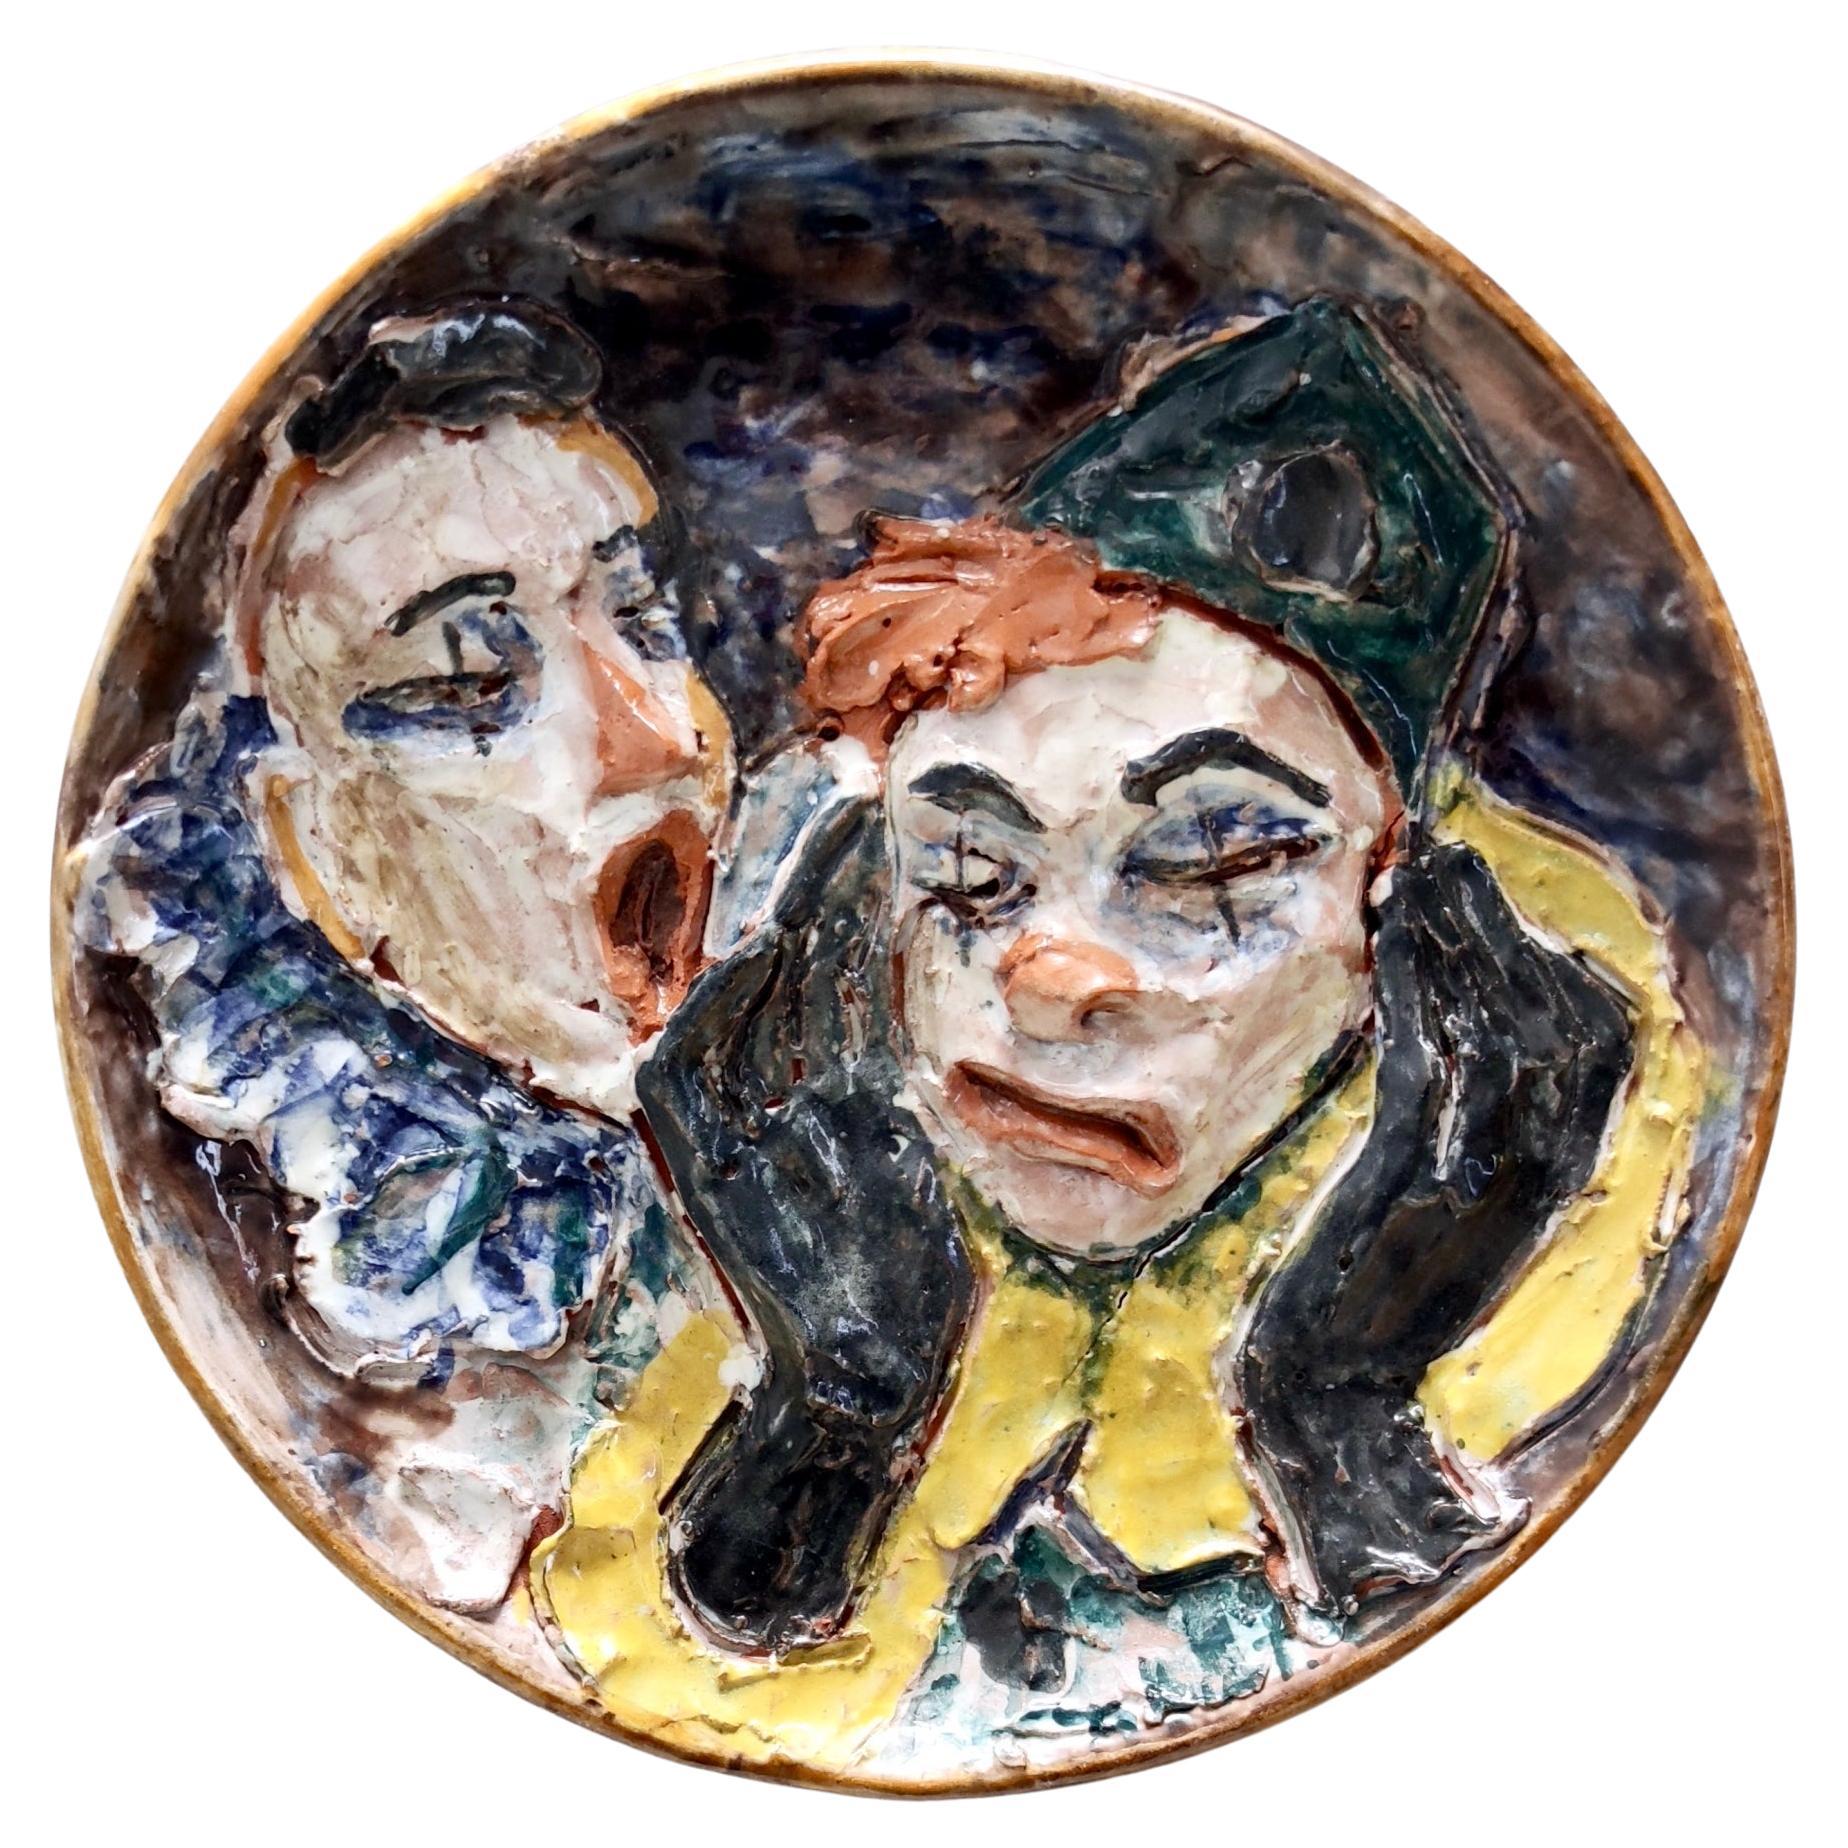 Vieille assiette en céramique émaillée avec deux clowns, Italie